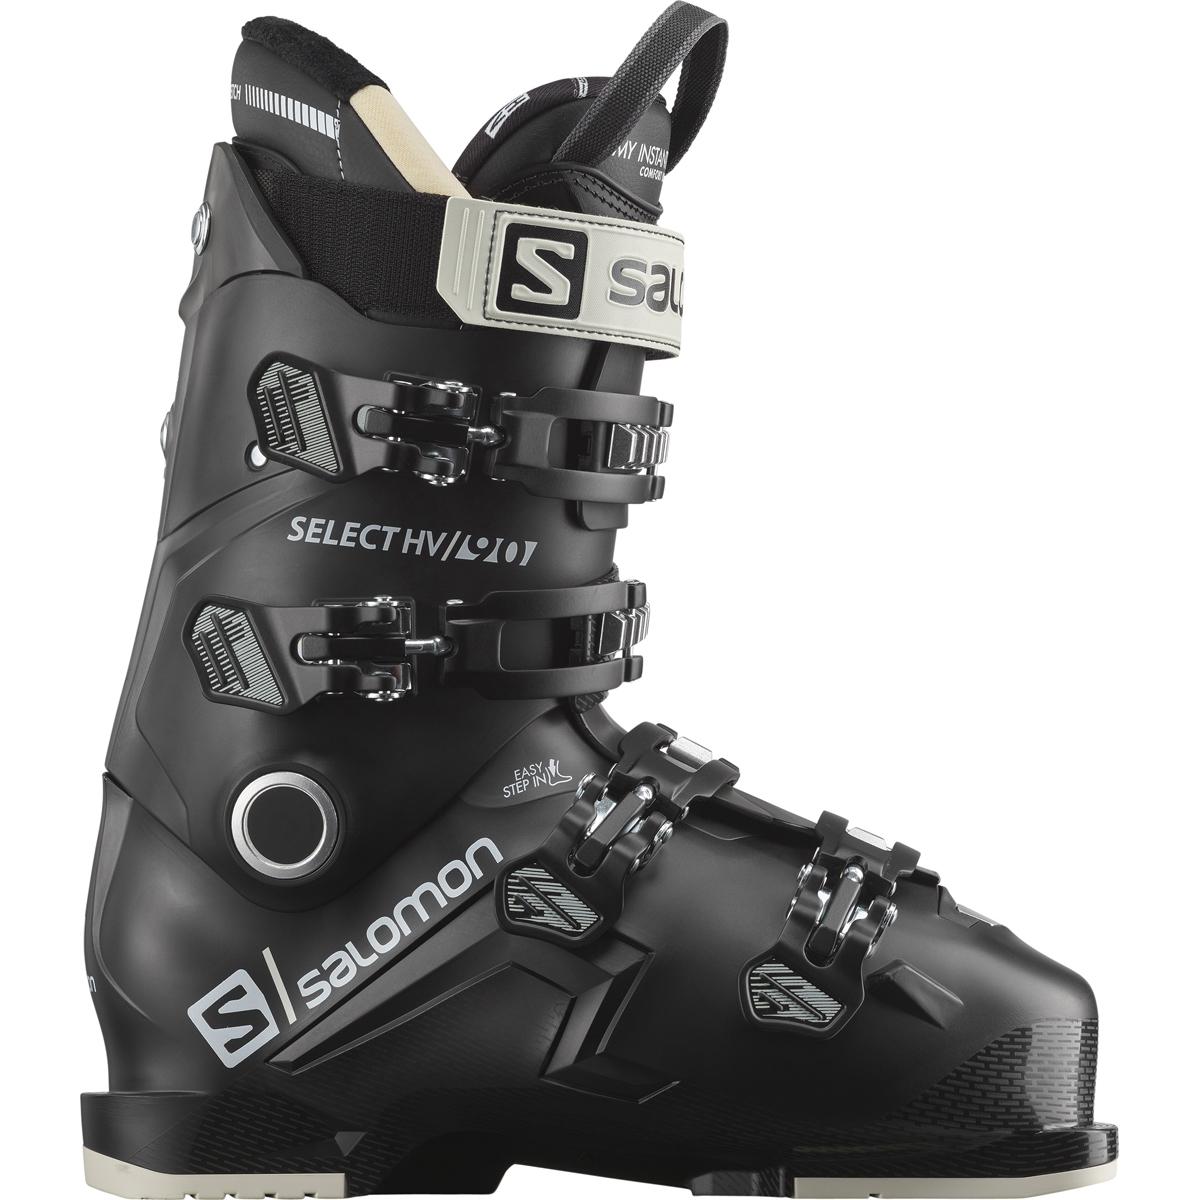 スキーブーツ SALOMON SELECT HV 90商品名